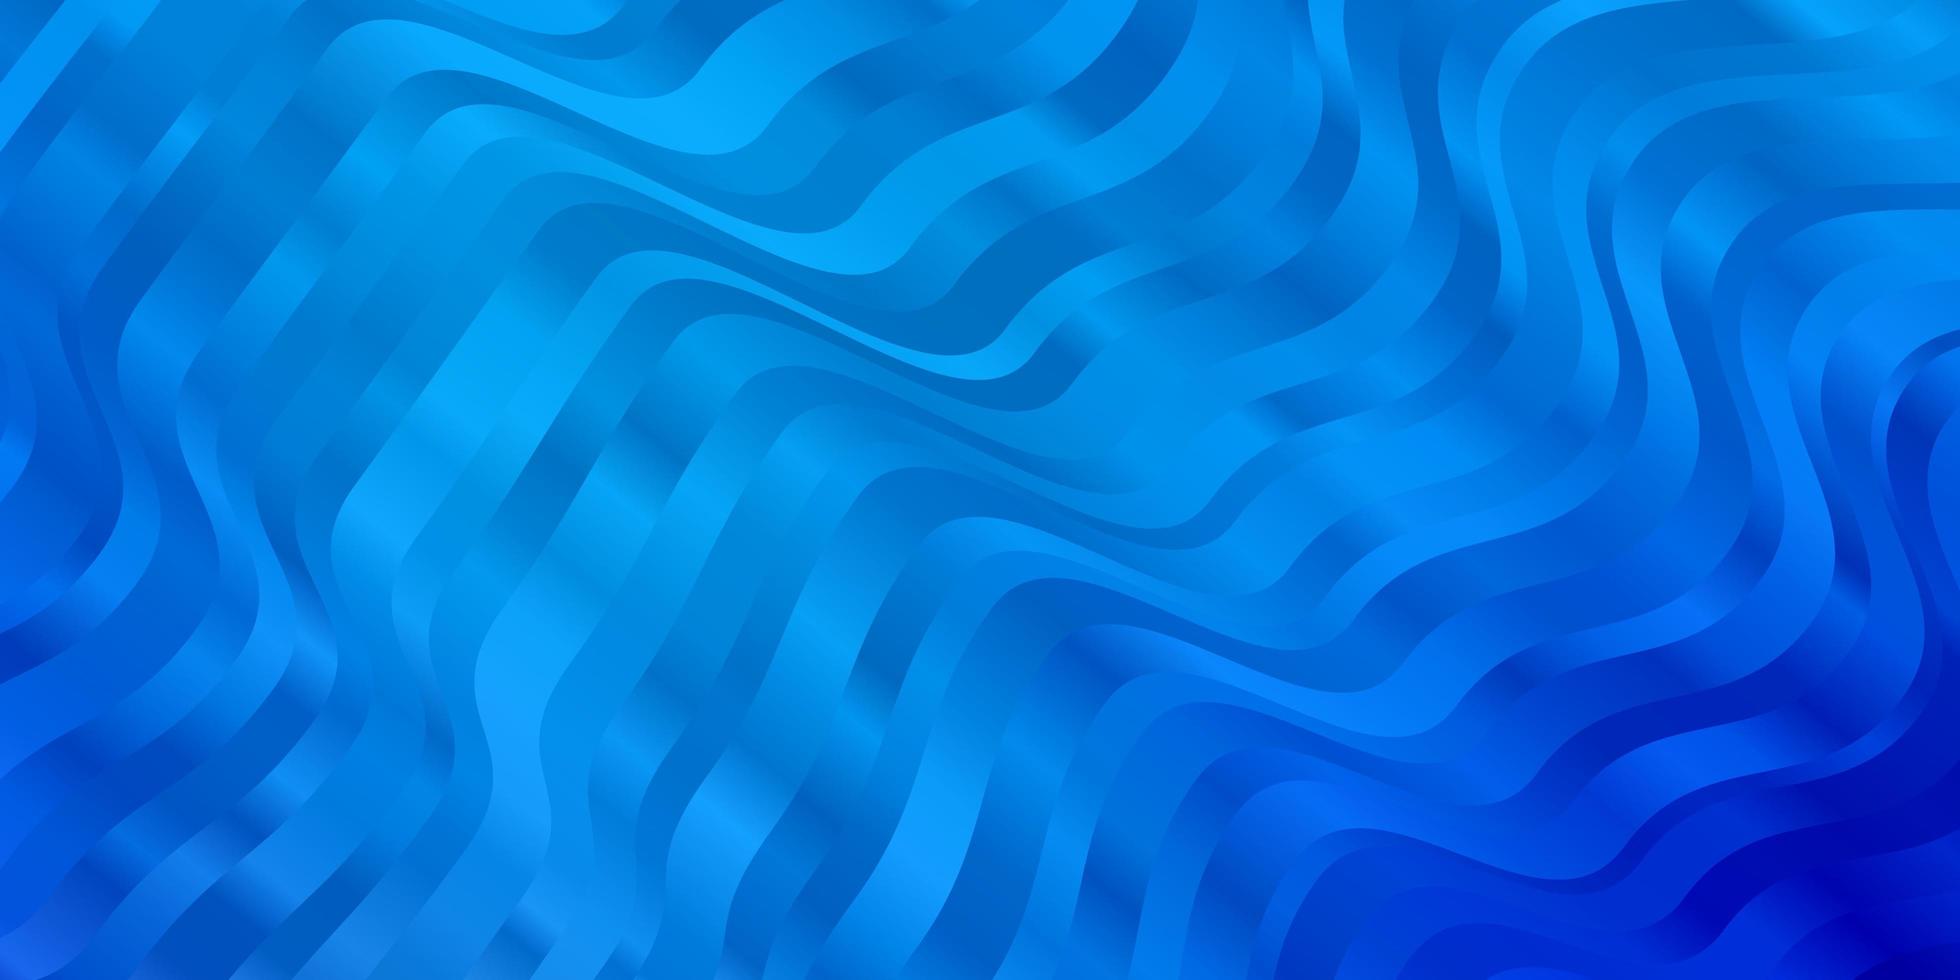 ljusblå vektor mönster med kurvor.